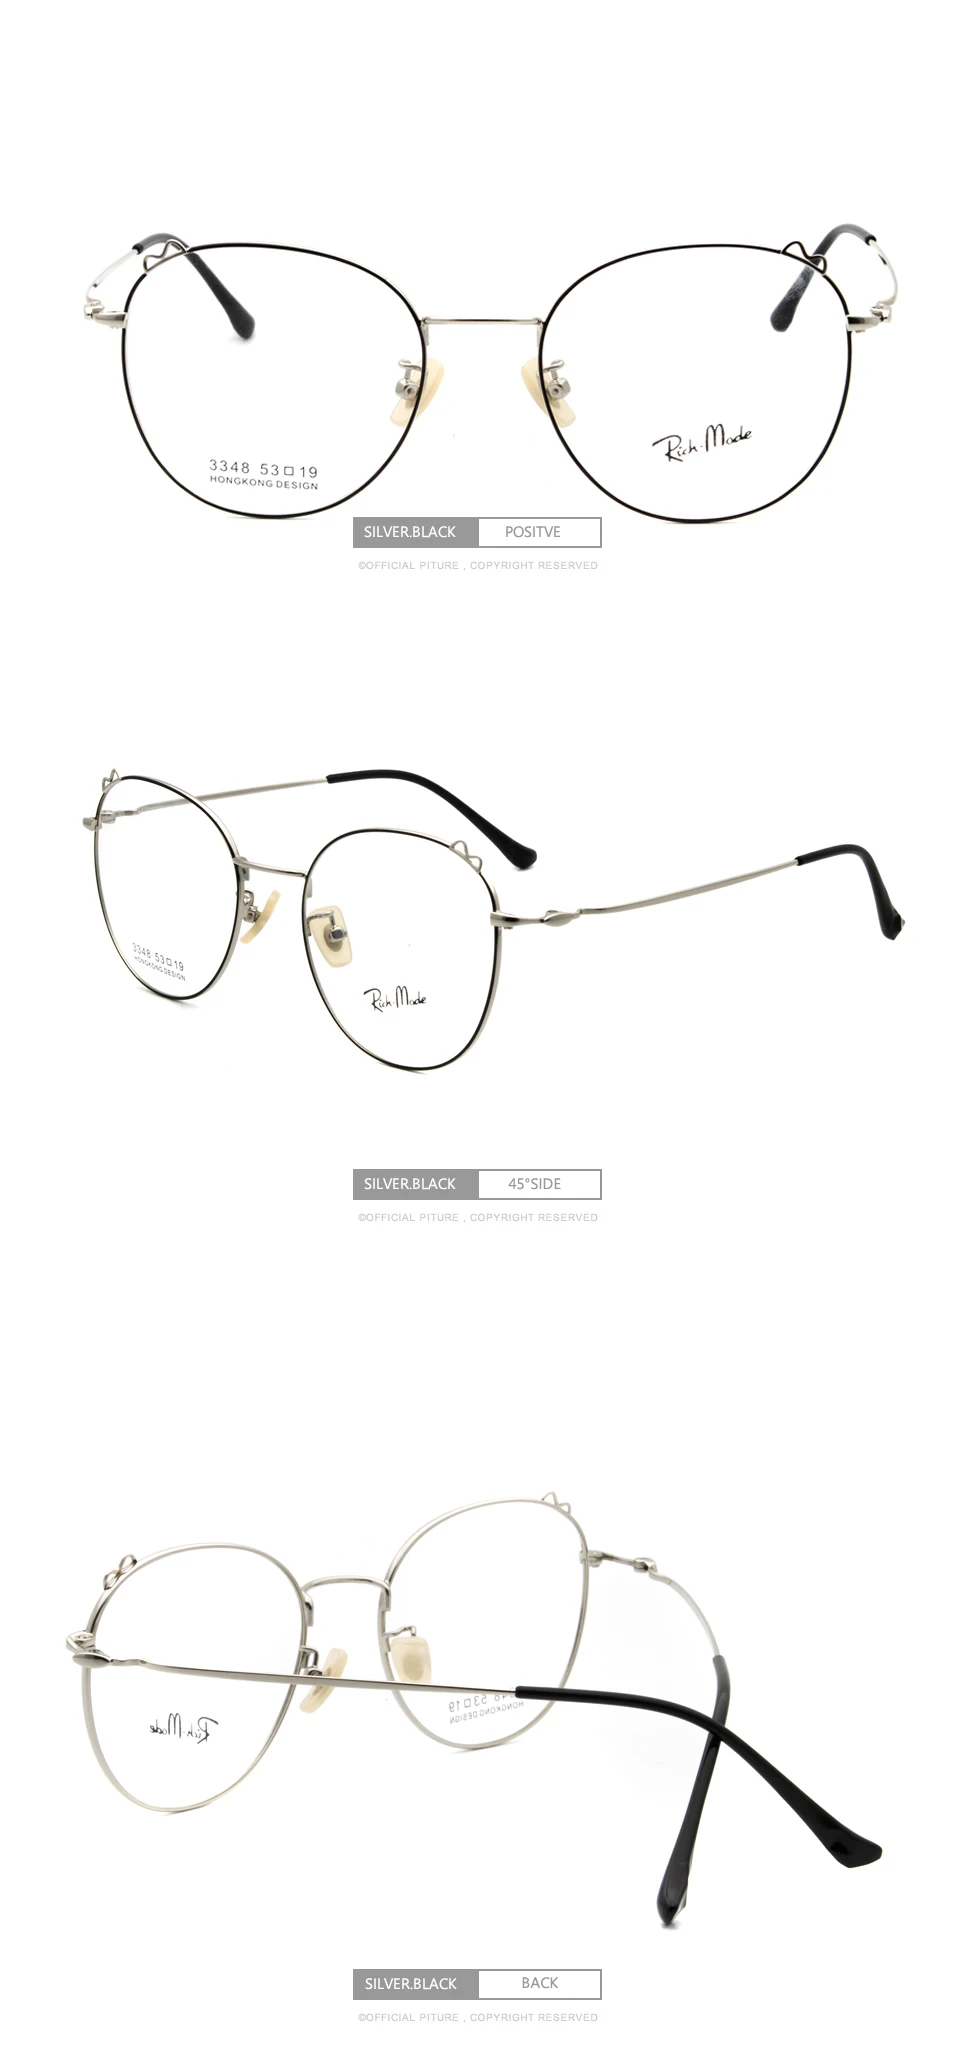 Мода полная Рамка обод ретро прямоугольник стеклянные женские очки с черным золотом Серебро Цвета G89